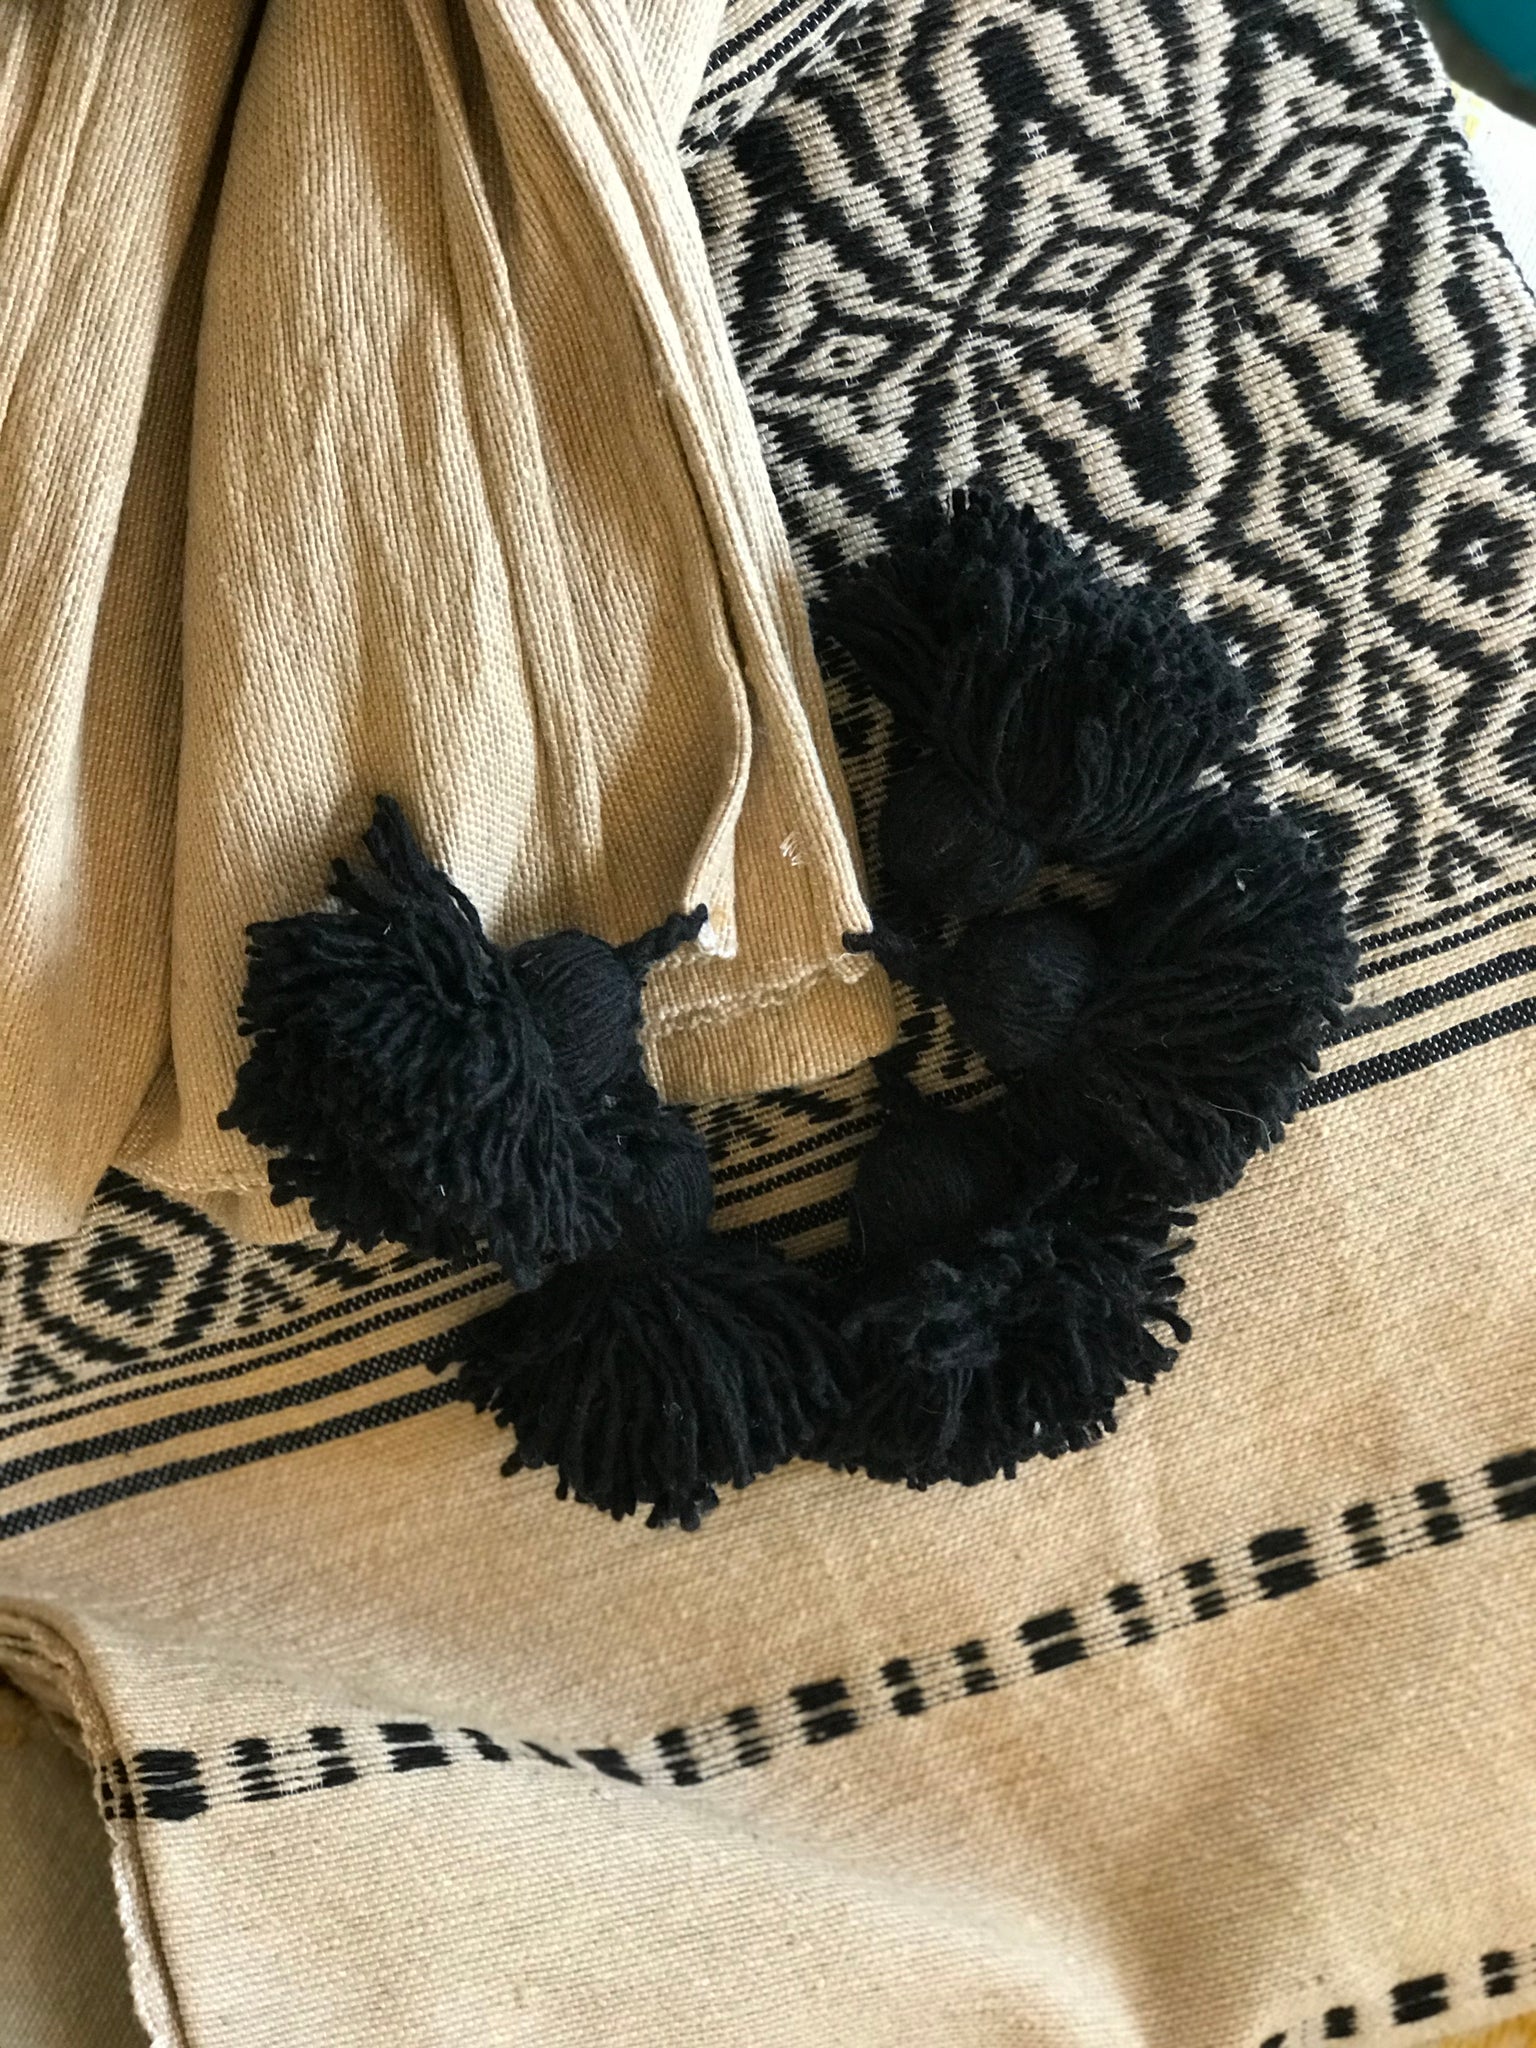 Jacquard Weave Pompom Blanket - Beige/Black